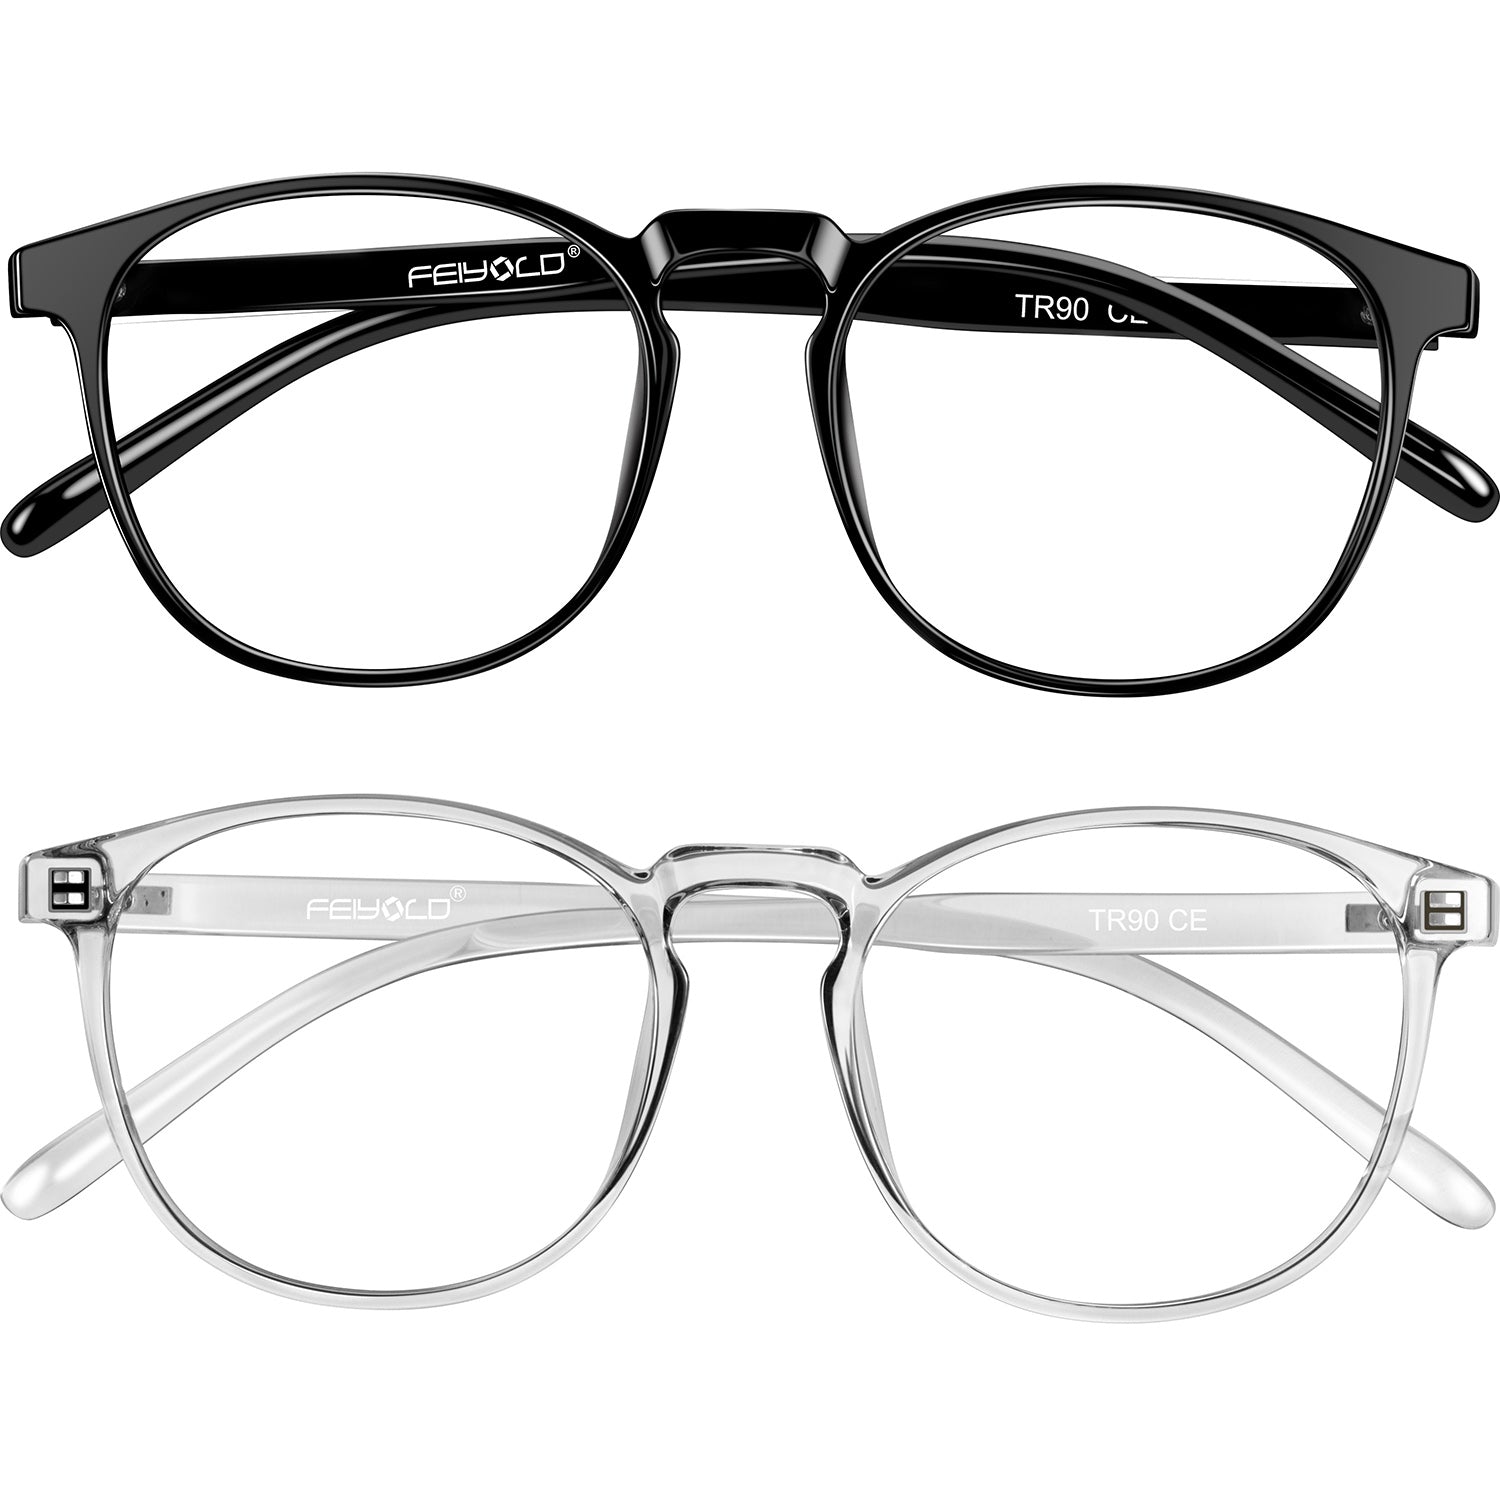 Blue Light Blocking Glasses Women/Men for Computer Use, Lightweight Anti Eyestrain Gaming Glasses Black+grey(2Pack)